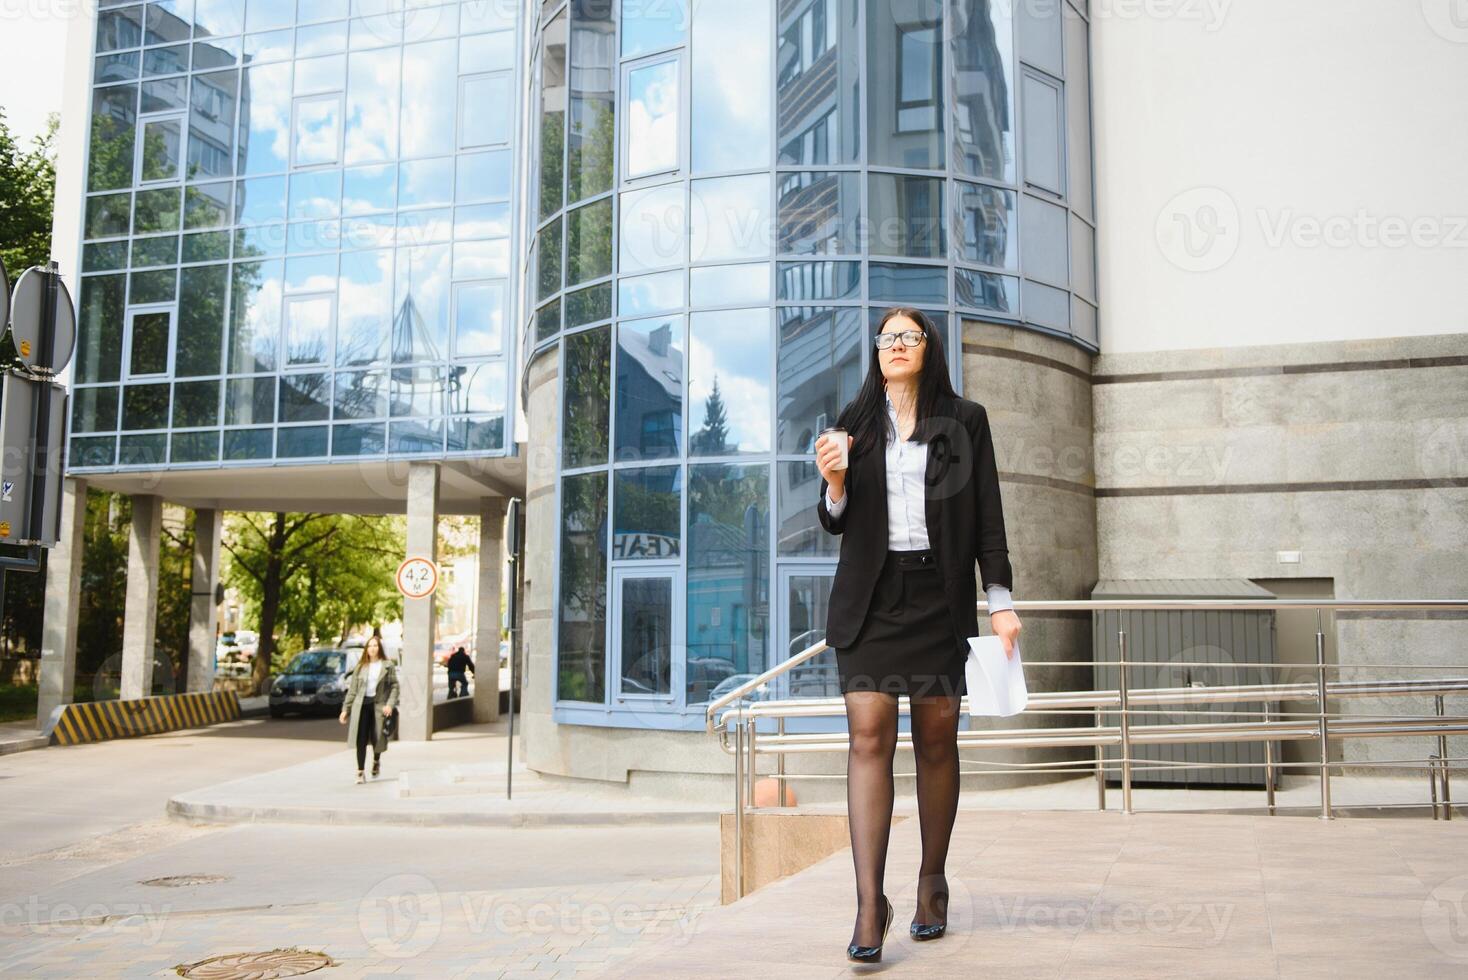 ung flicka kontor arbetstagare i glasögon, mörk jacka och blå skjorta vistelser på stad gata nära kontor byggnad och innehar henne dokument. foto